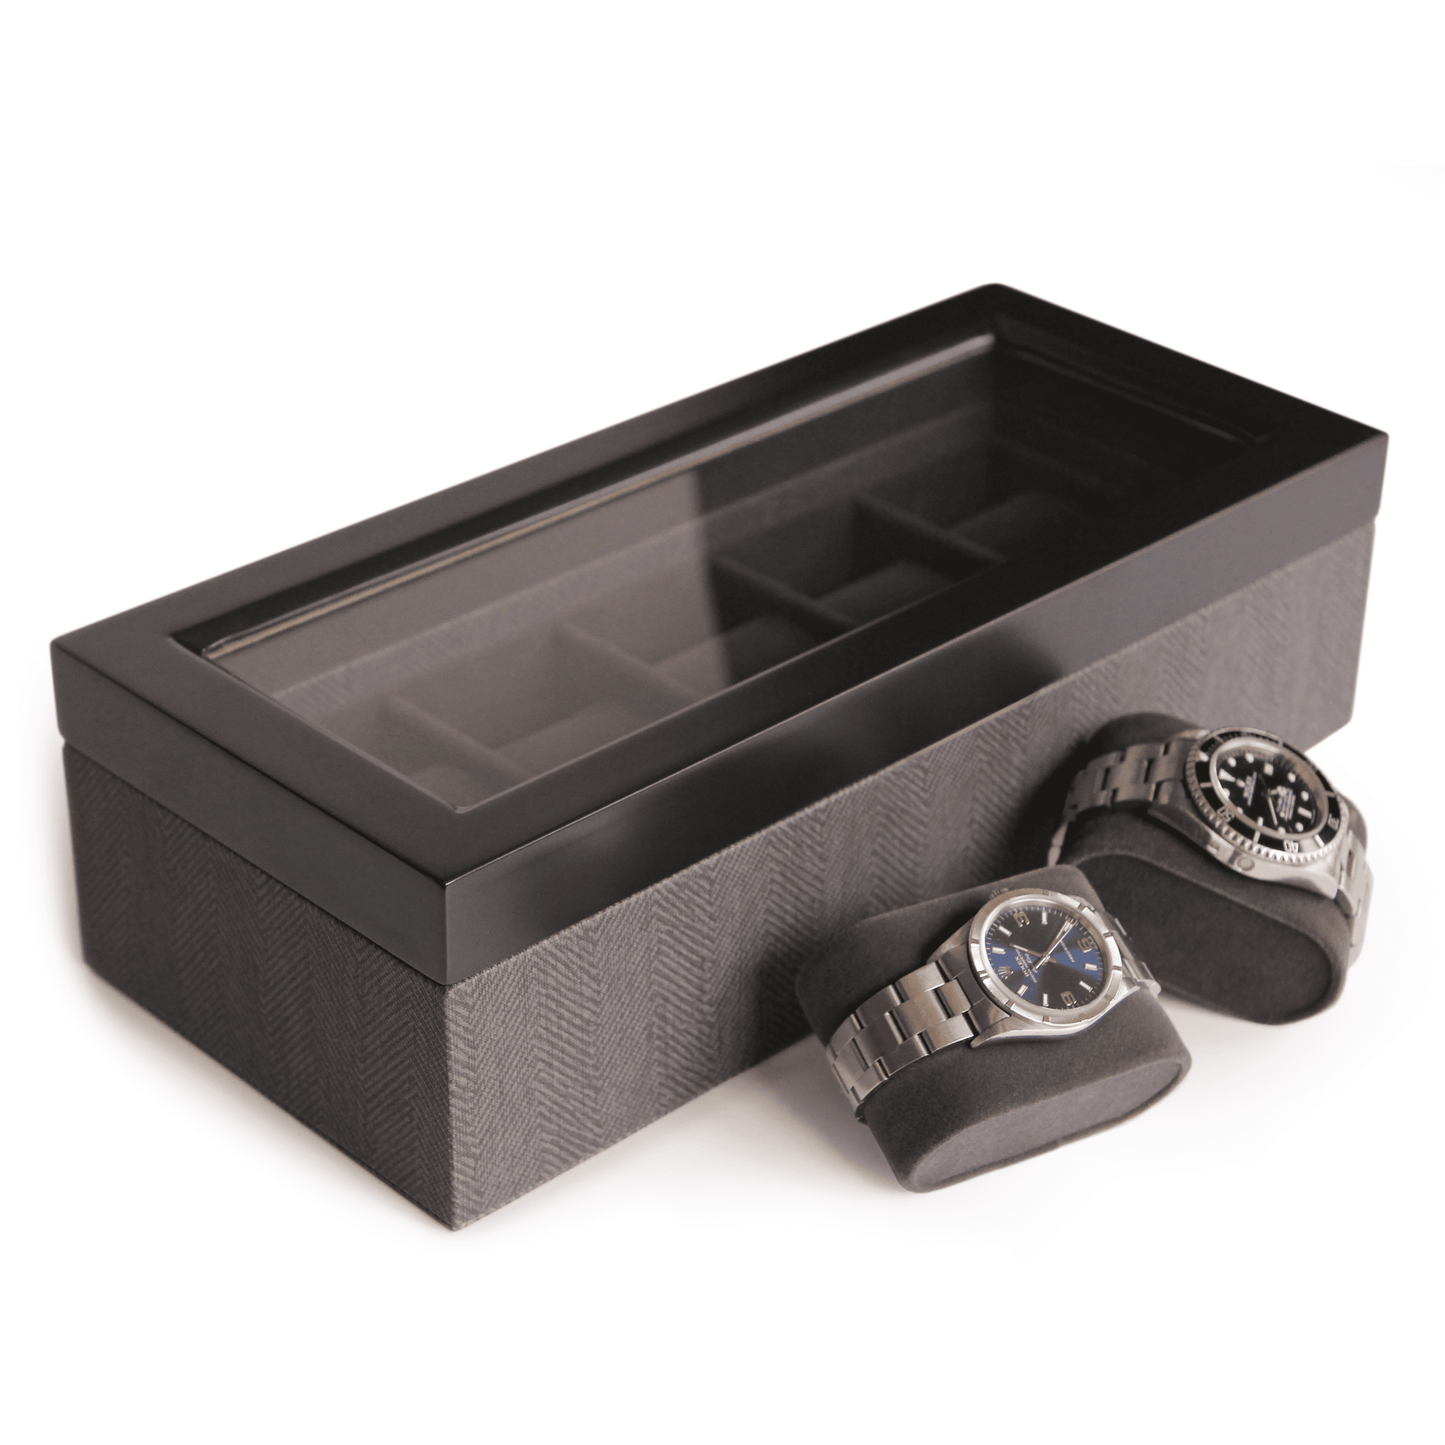 Herringbone Two-Toned Watch Box - 5 Slot